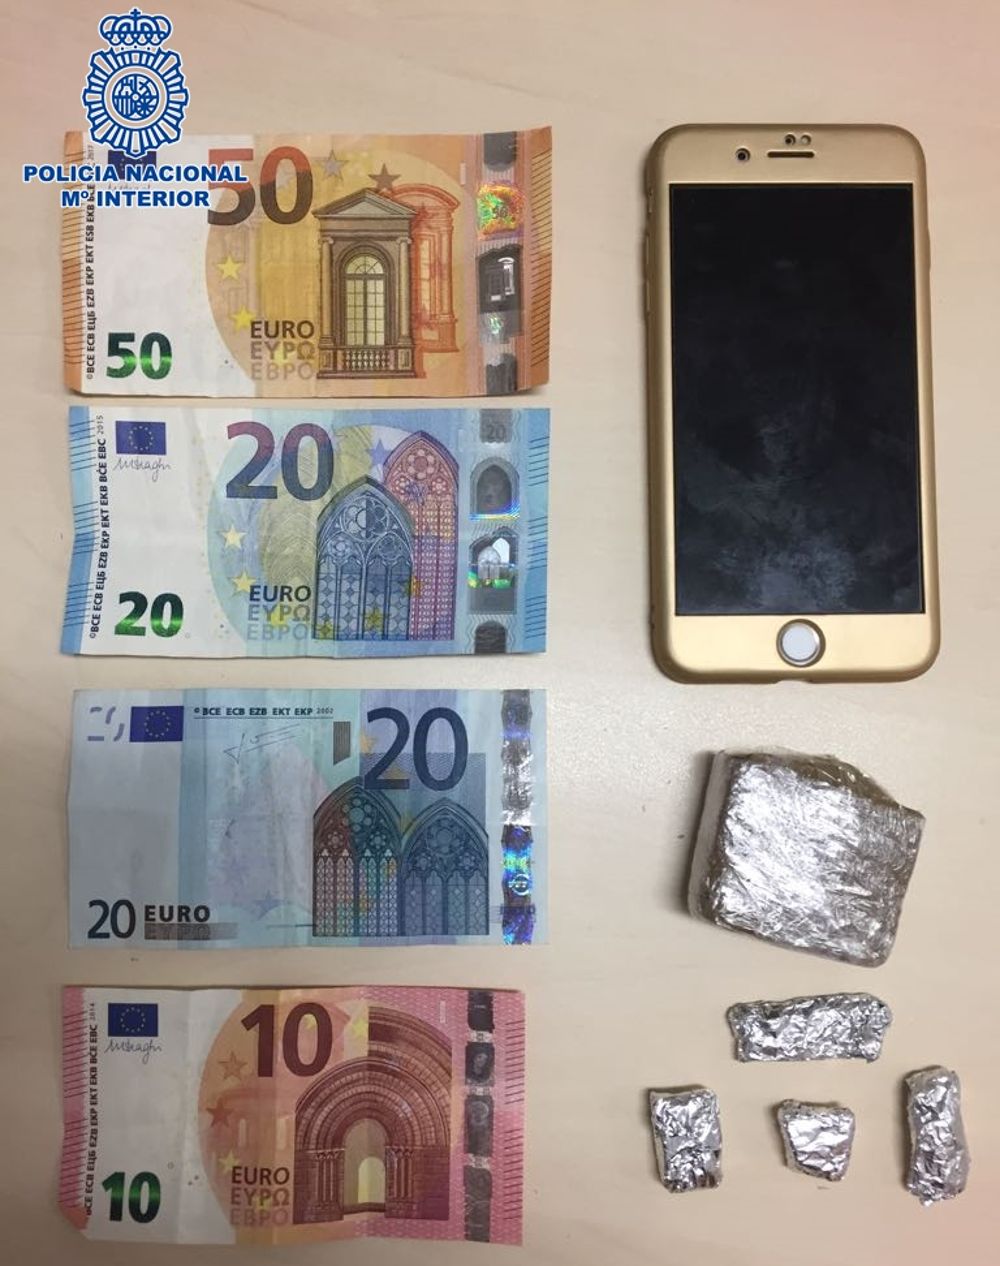 Droga, dinero y un teléfono móvil intervenidos por la Policía.